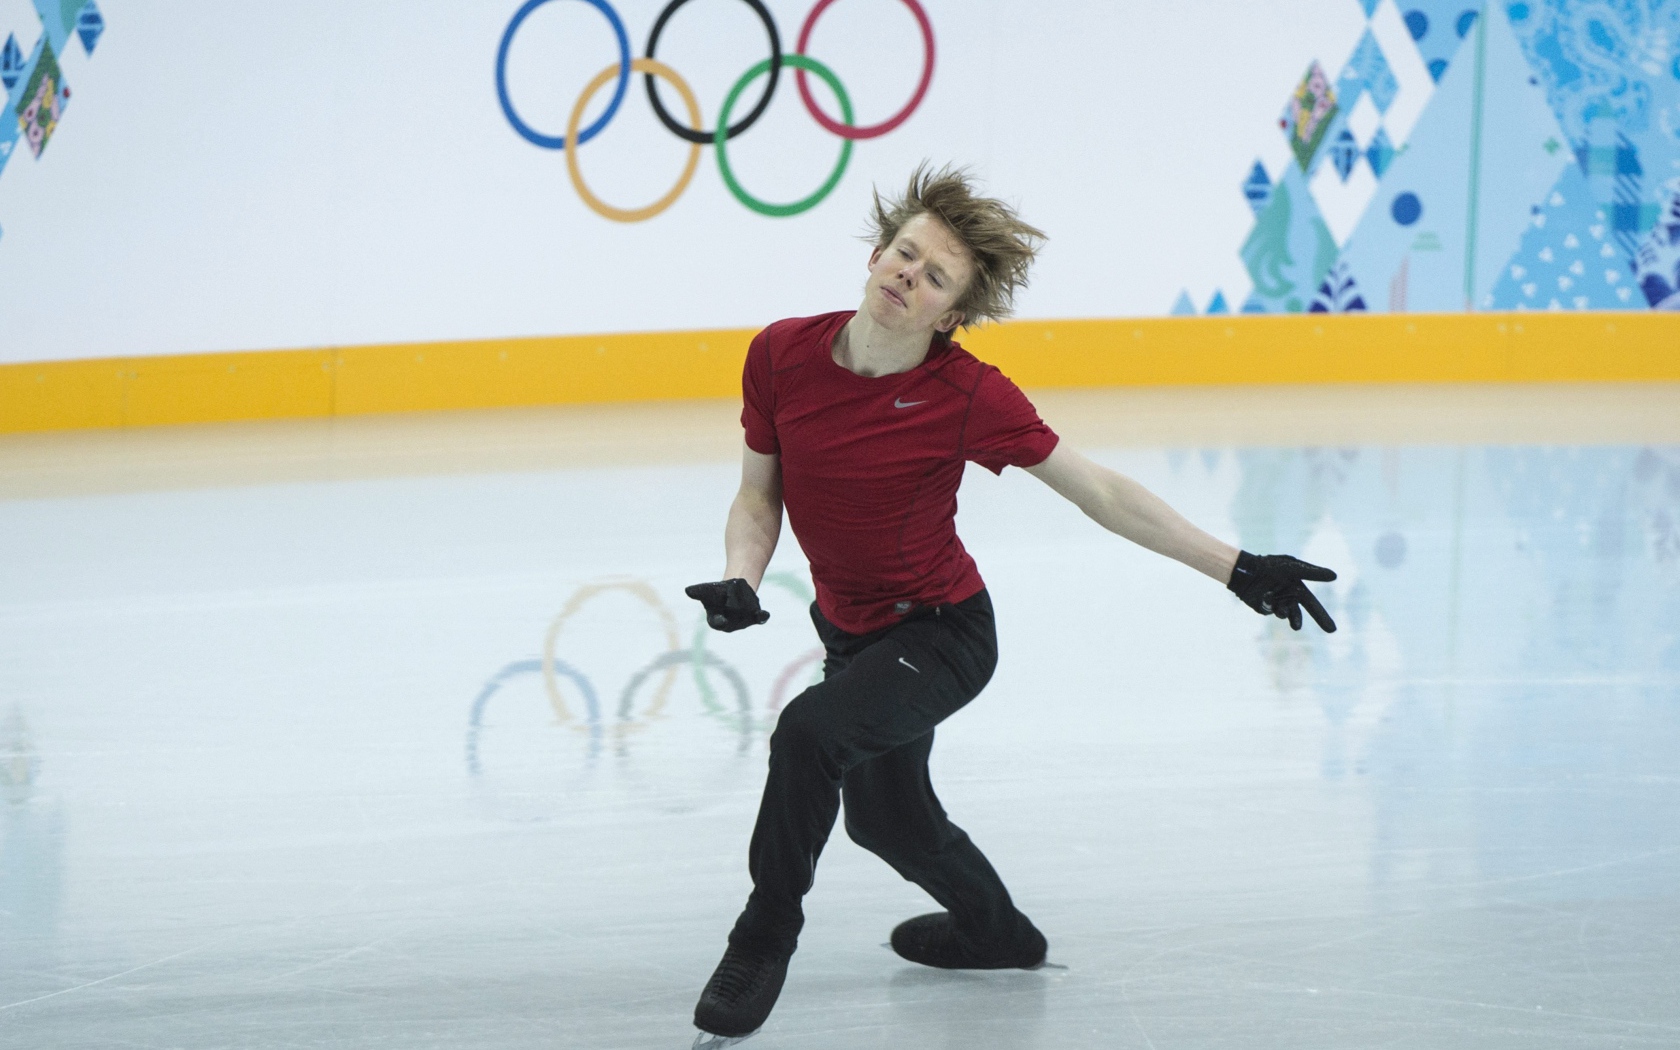 Обладатель серебряной медали канадский фигурист Кевин Рейнольдс на олимпиаде в Сочи